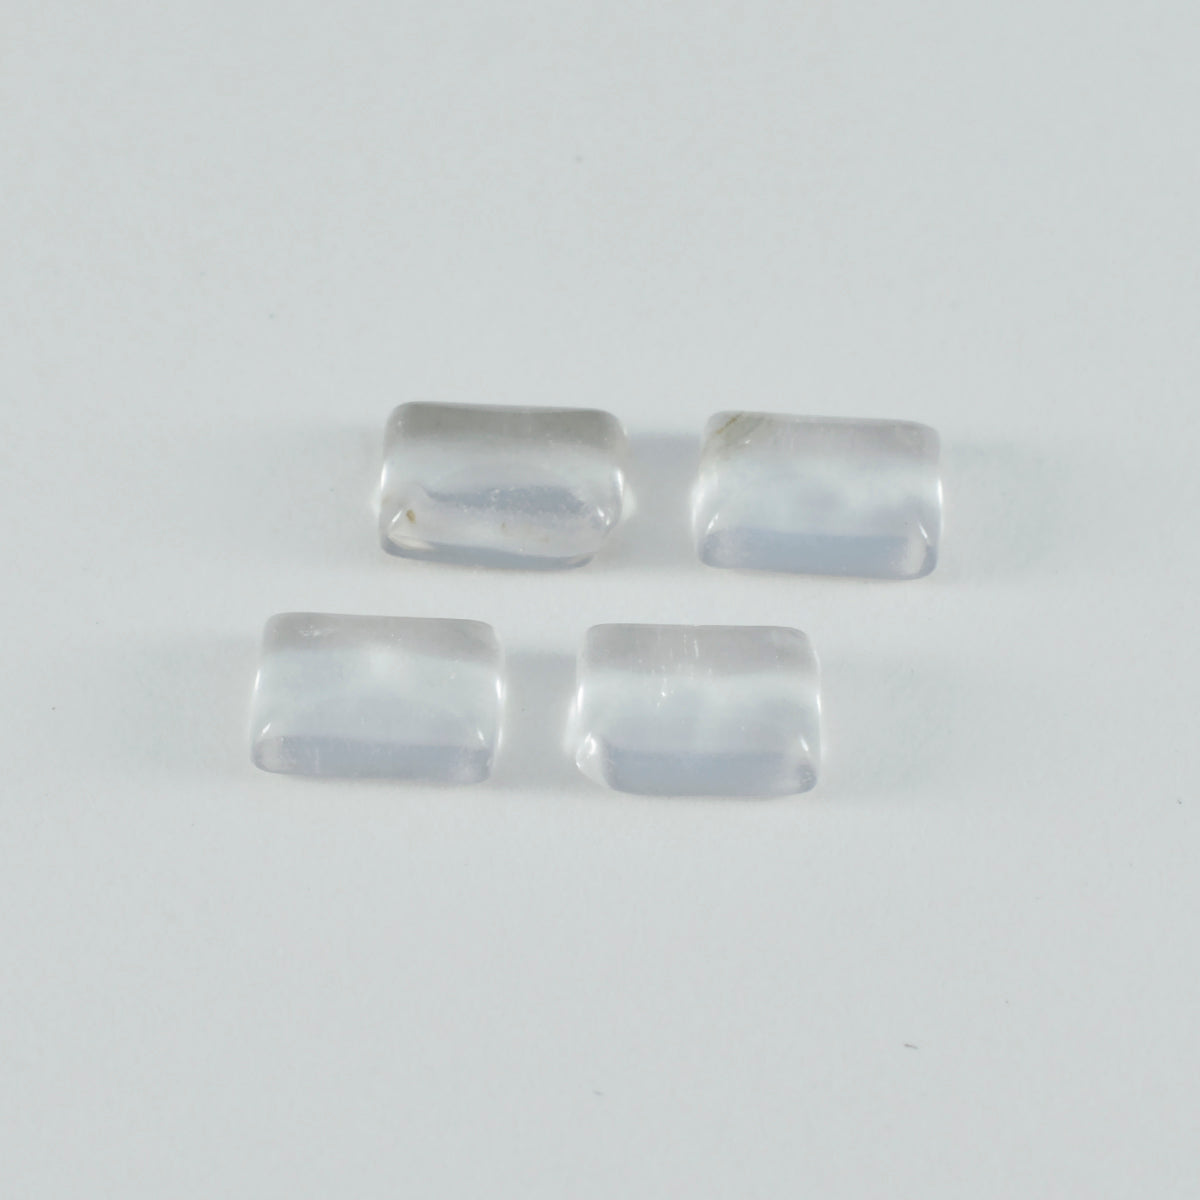 Riyogems – cabochon de quartz en cristal blanc, 9x11mm, forme octogonale, pierres précieuses en vrac de grande qualité, 1 pièce